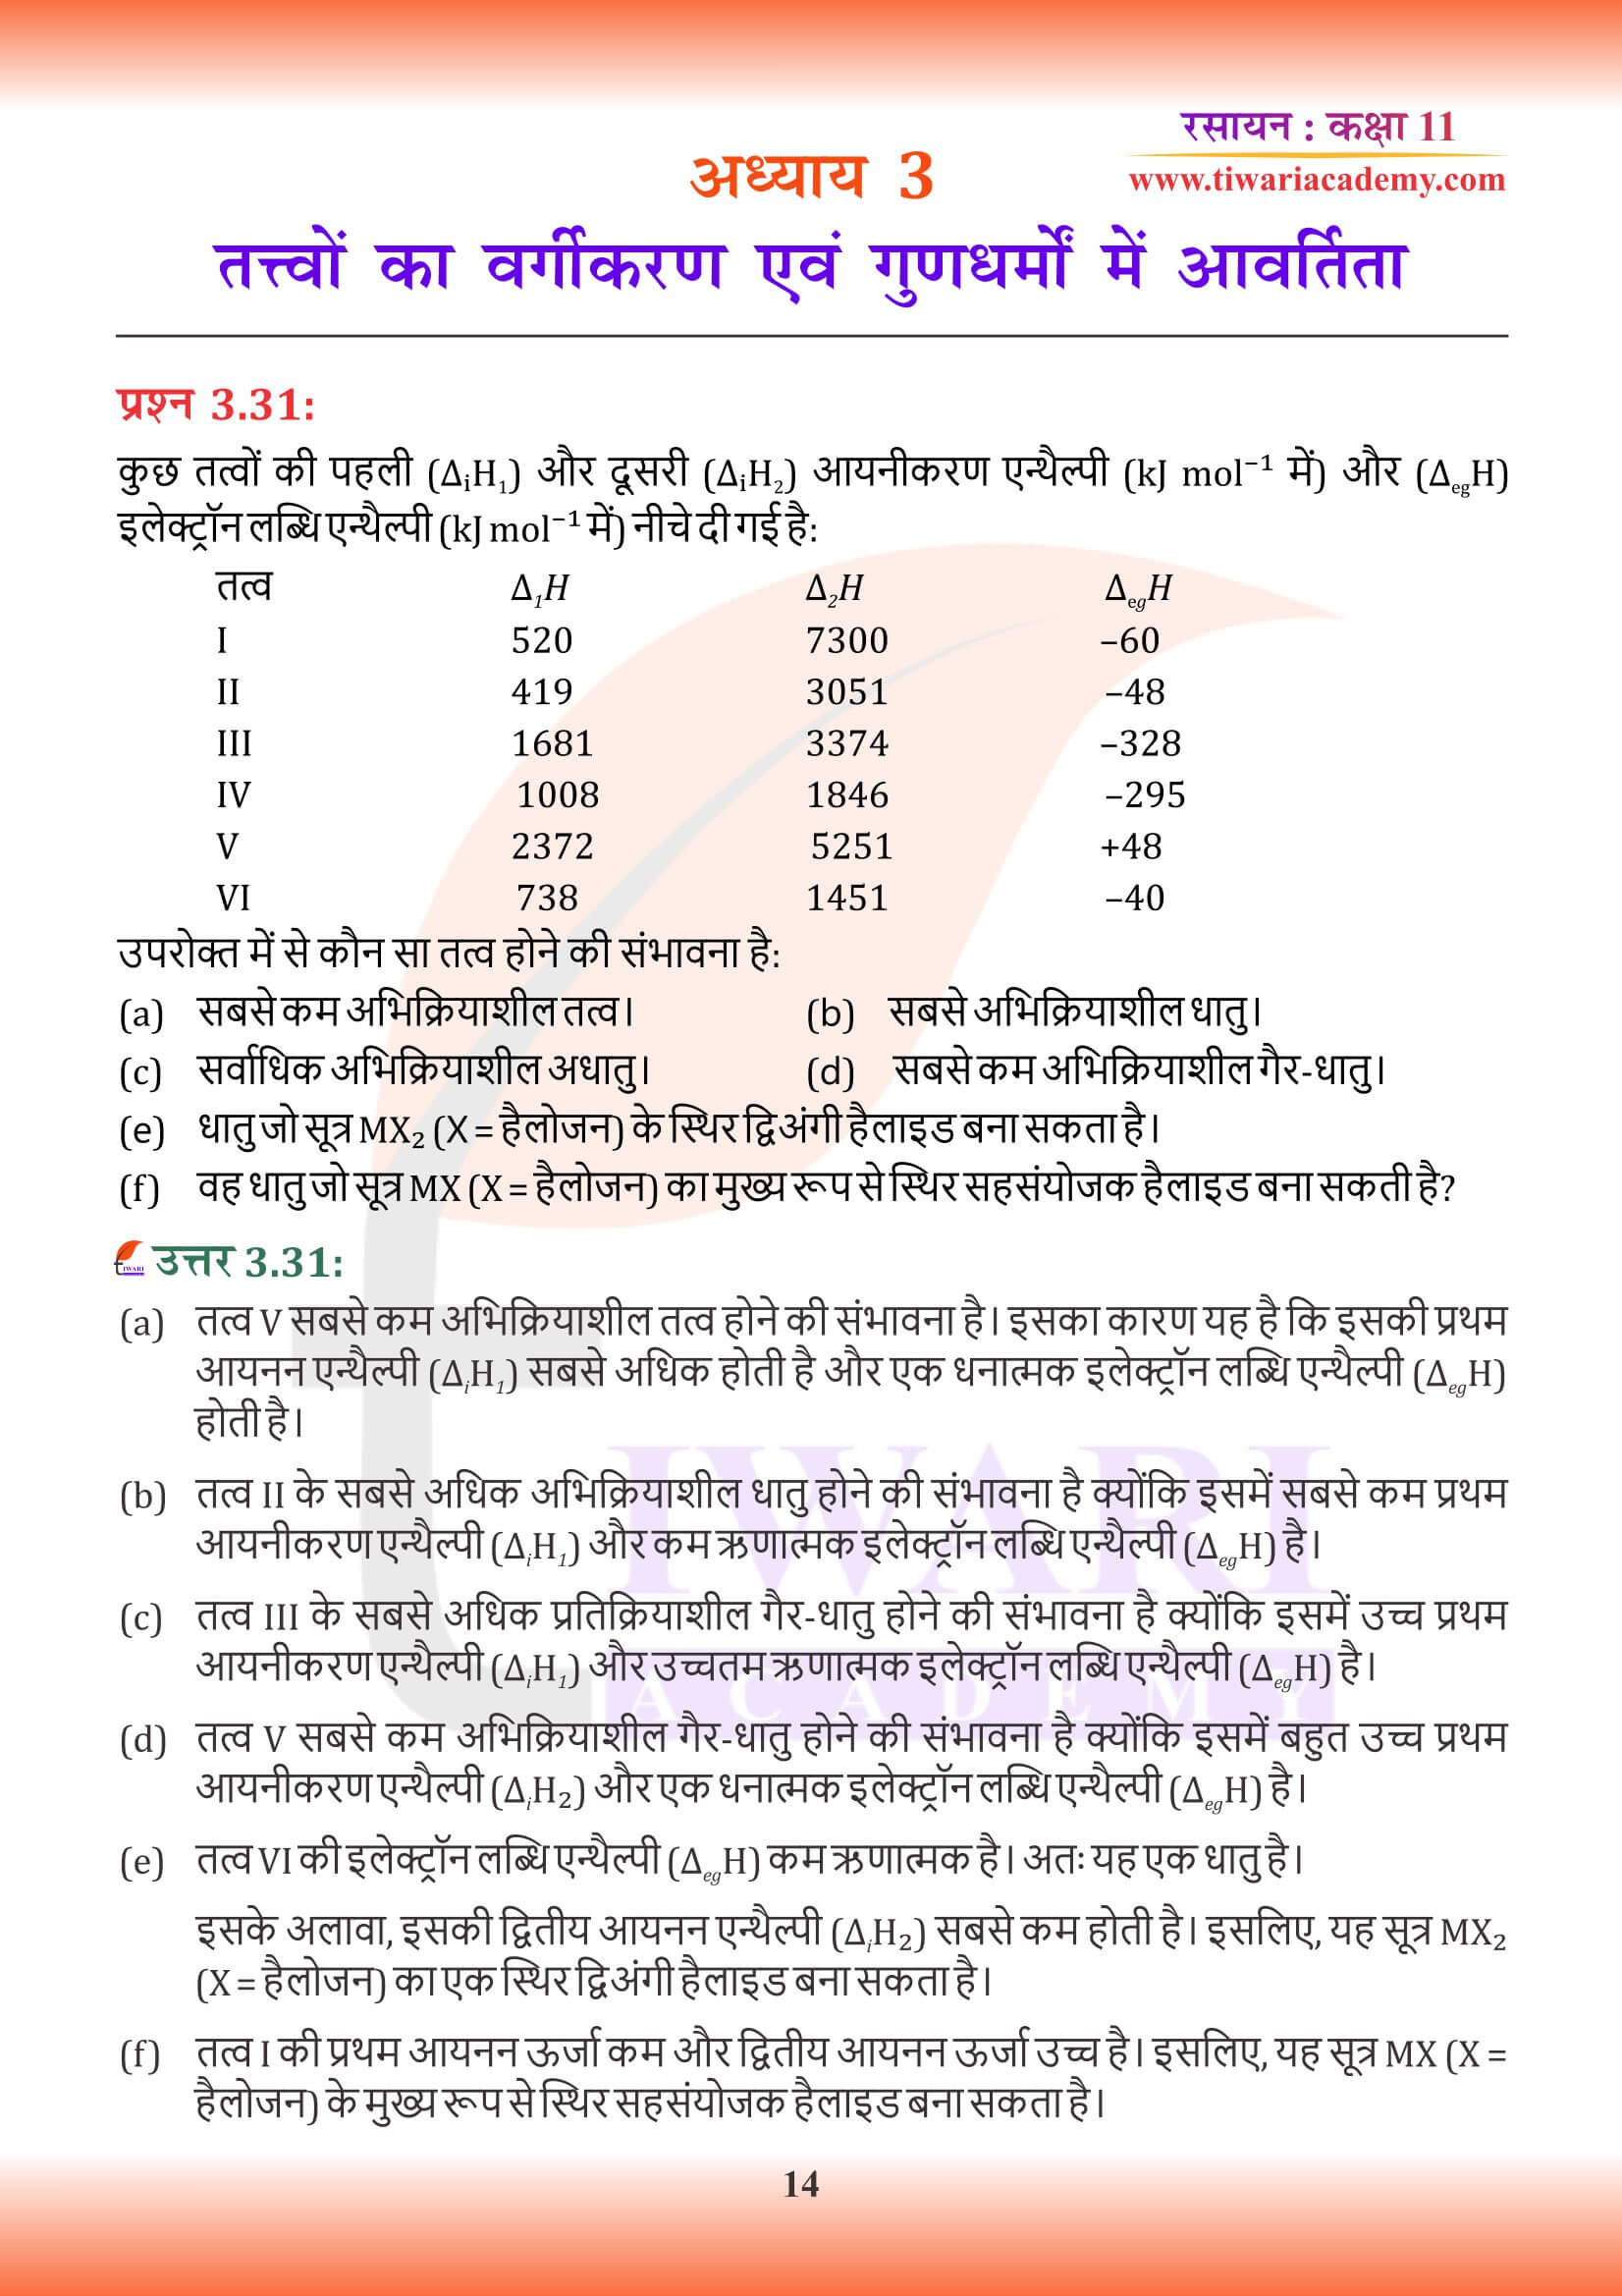 कक्षा 11 रसायन अध्याय 3 के उत्तर हिंदी में